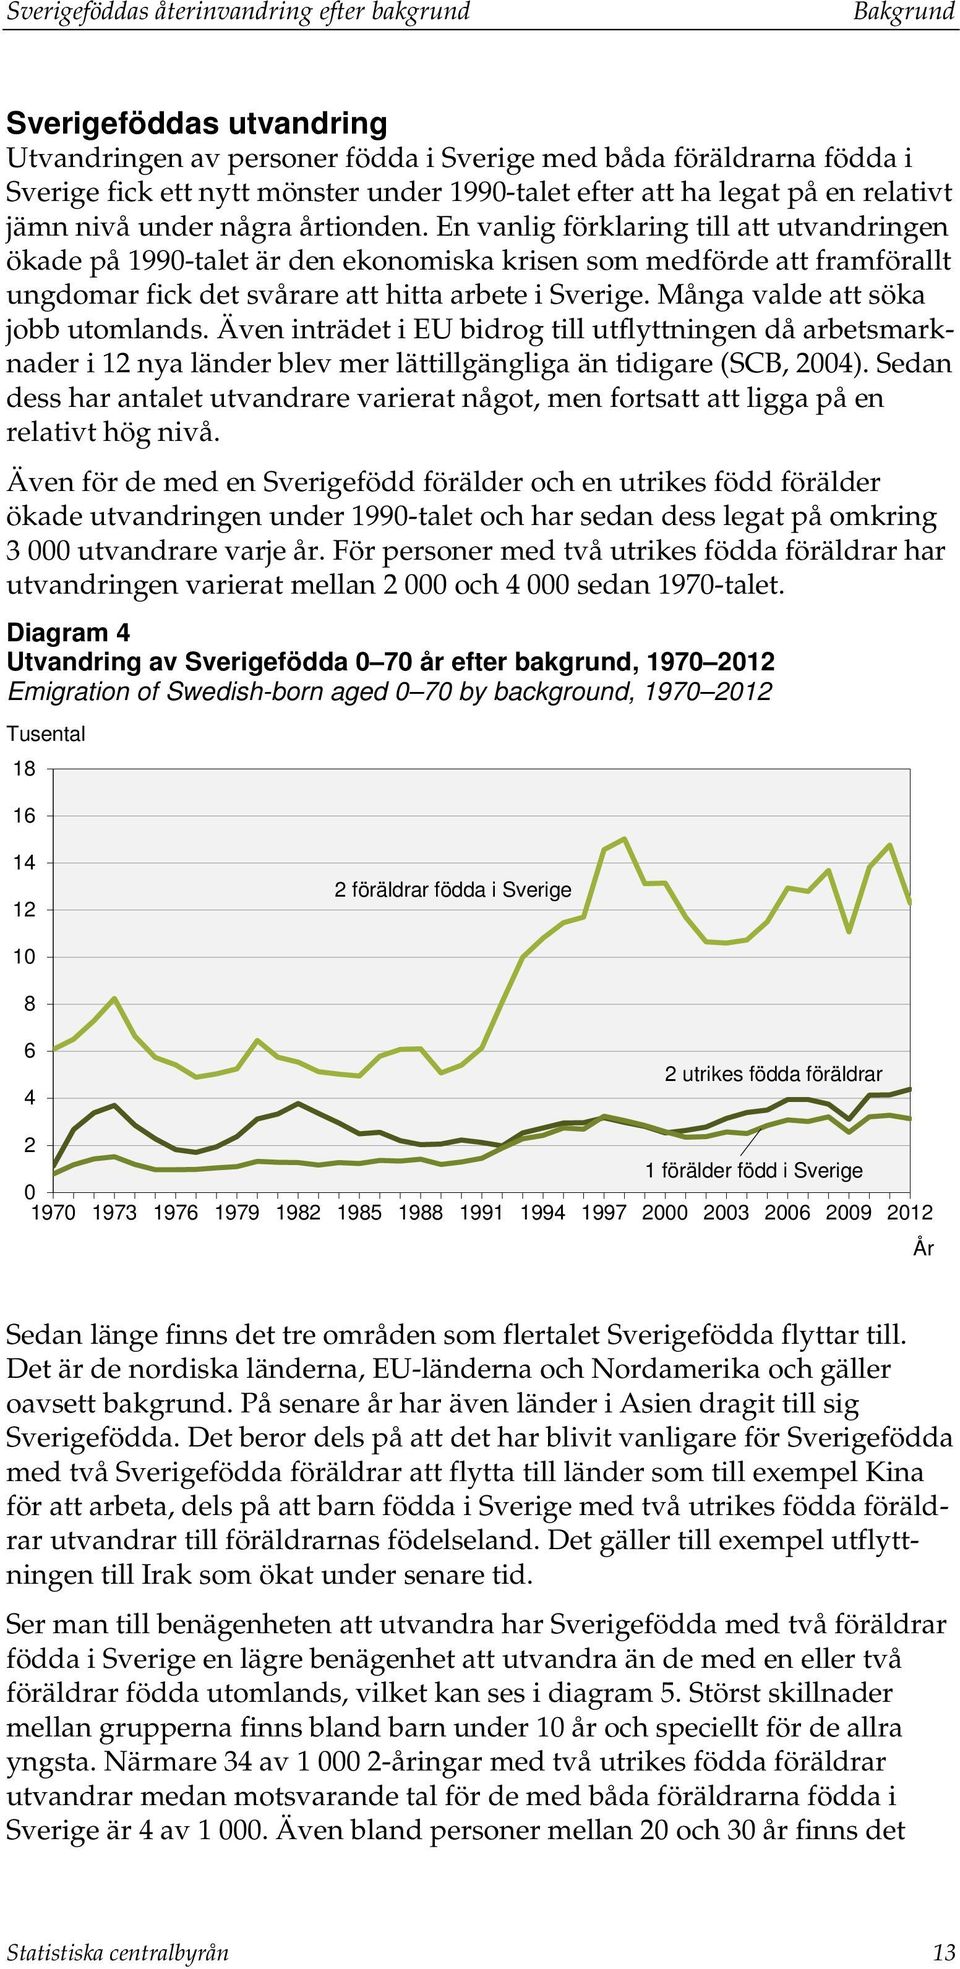 En vanlig förklaring till att utvandringen ökade på 1990-talet är den ekonomiska krisen som medförde att framförallt ungdomar fick det svårare att hitta arbete i Sverige.